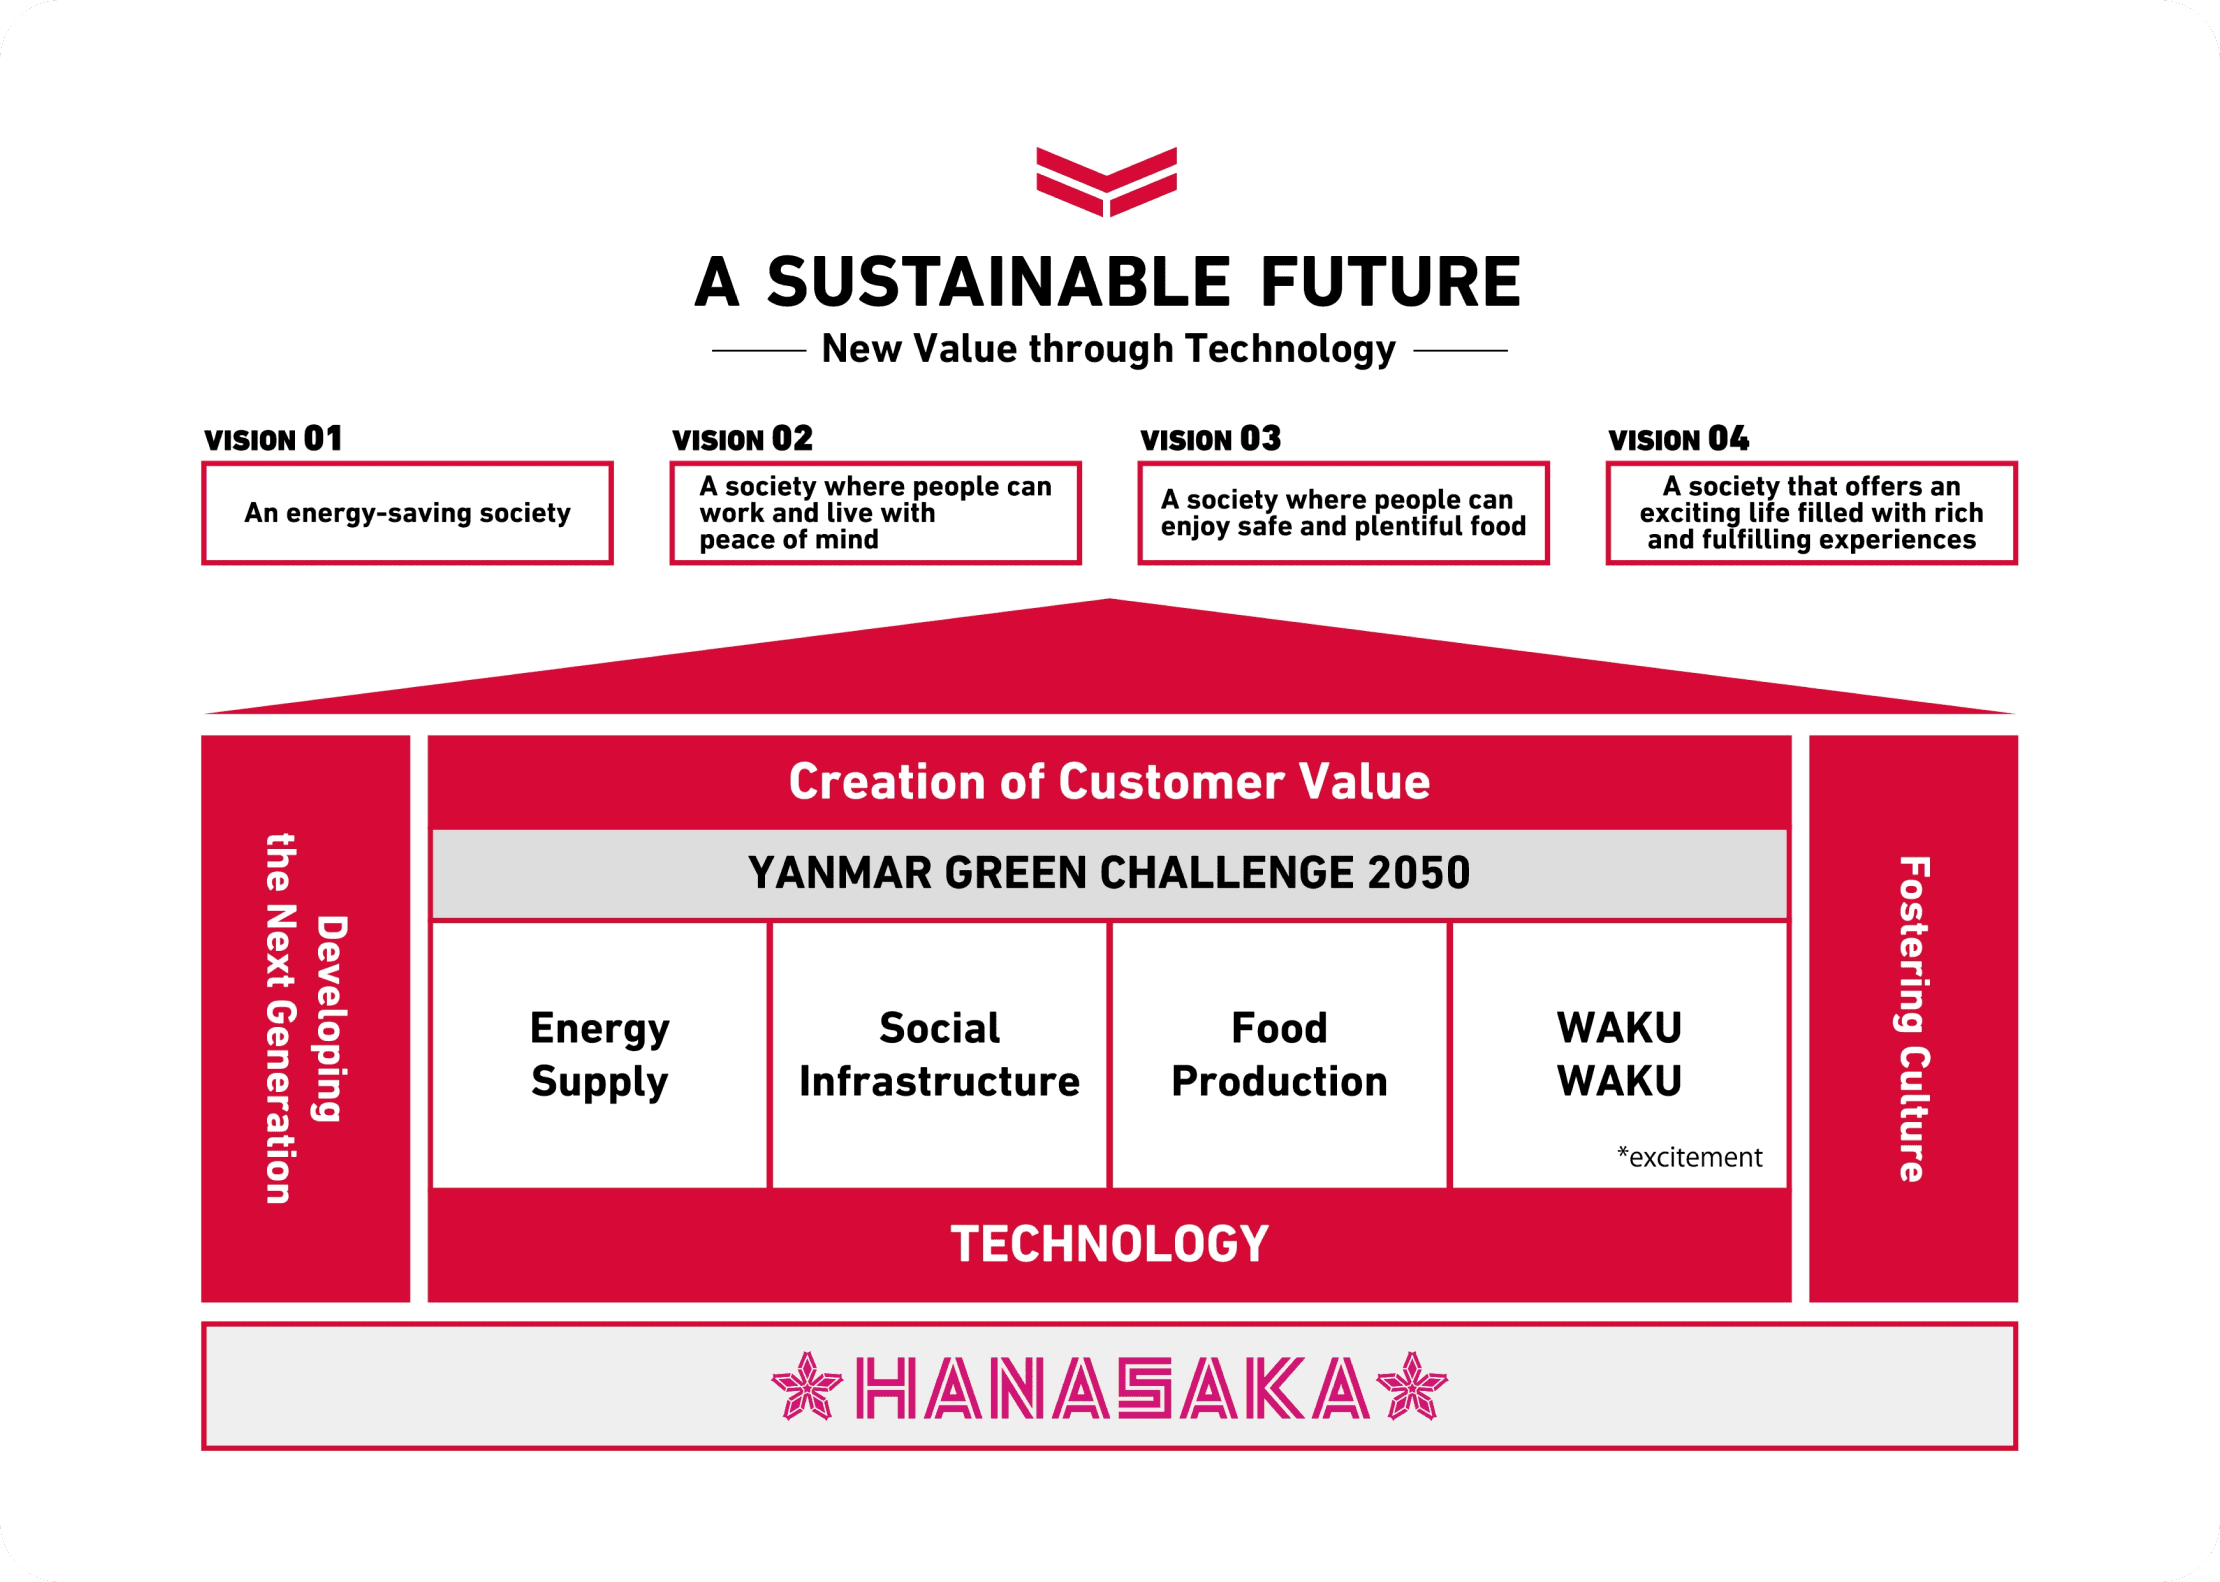 該圖顯示了在HANASAKA的基礎上依次建立的每項業務活動、未來願景和可持續未來中的四個社會。